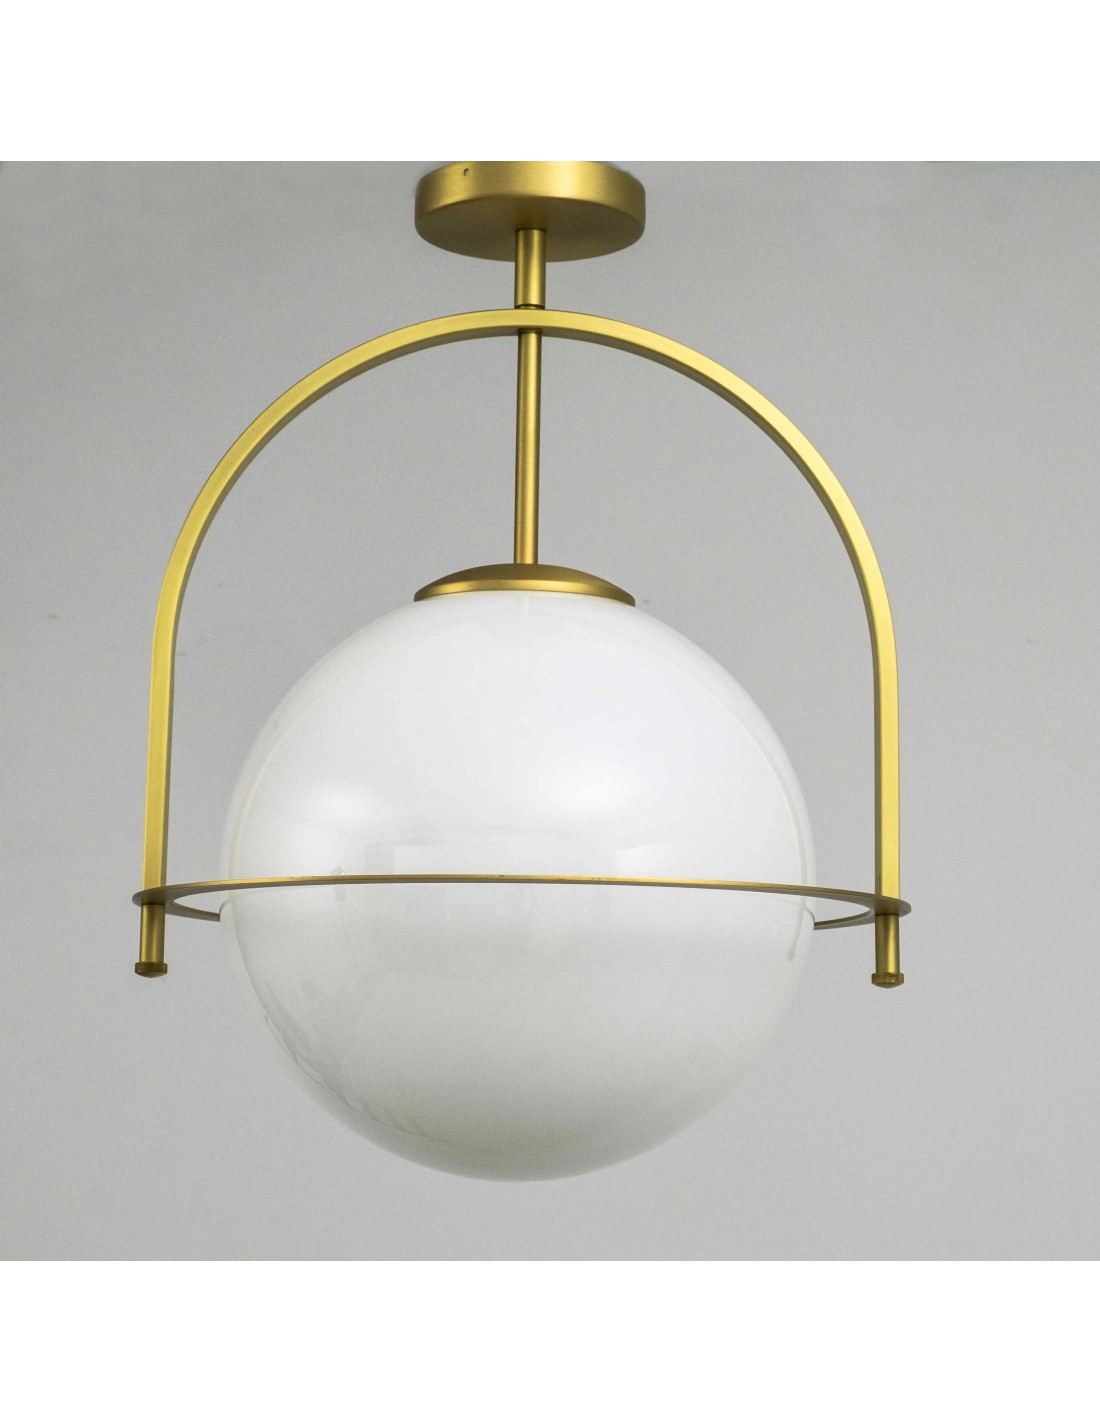 lámpara de techo con acabado dorado mate rodeado por un anillo con una bola de cristal